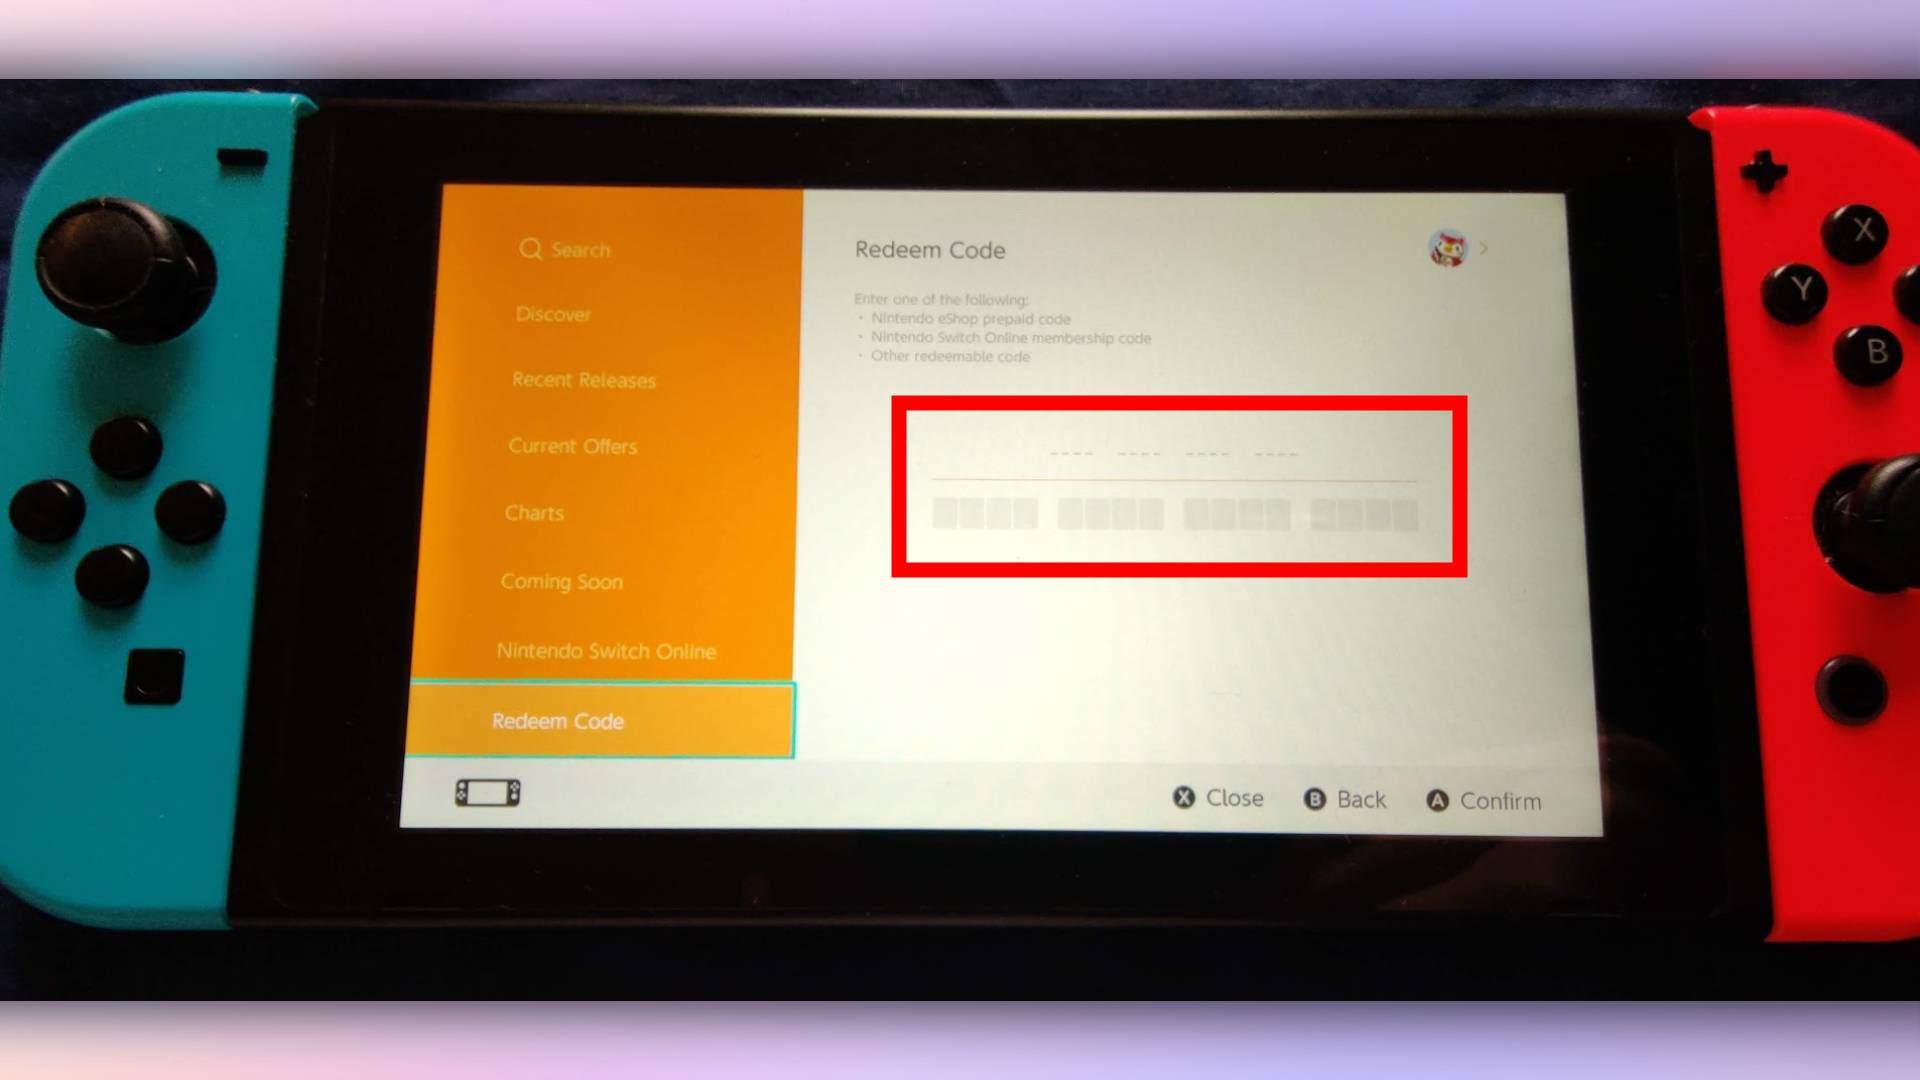 Фотография консоли Nintendo Switch.  Поле для ввода кода на экране выделено.